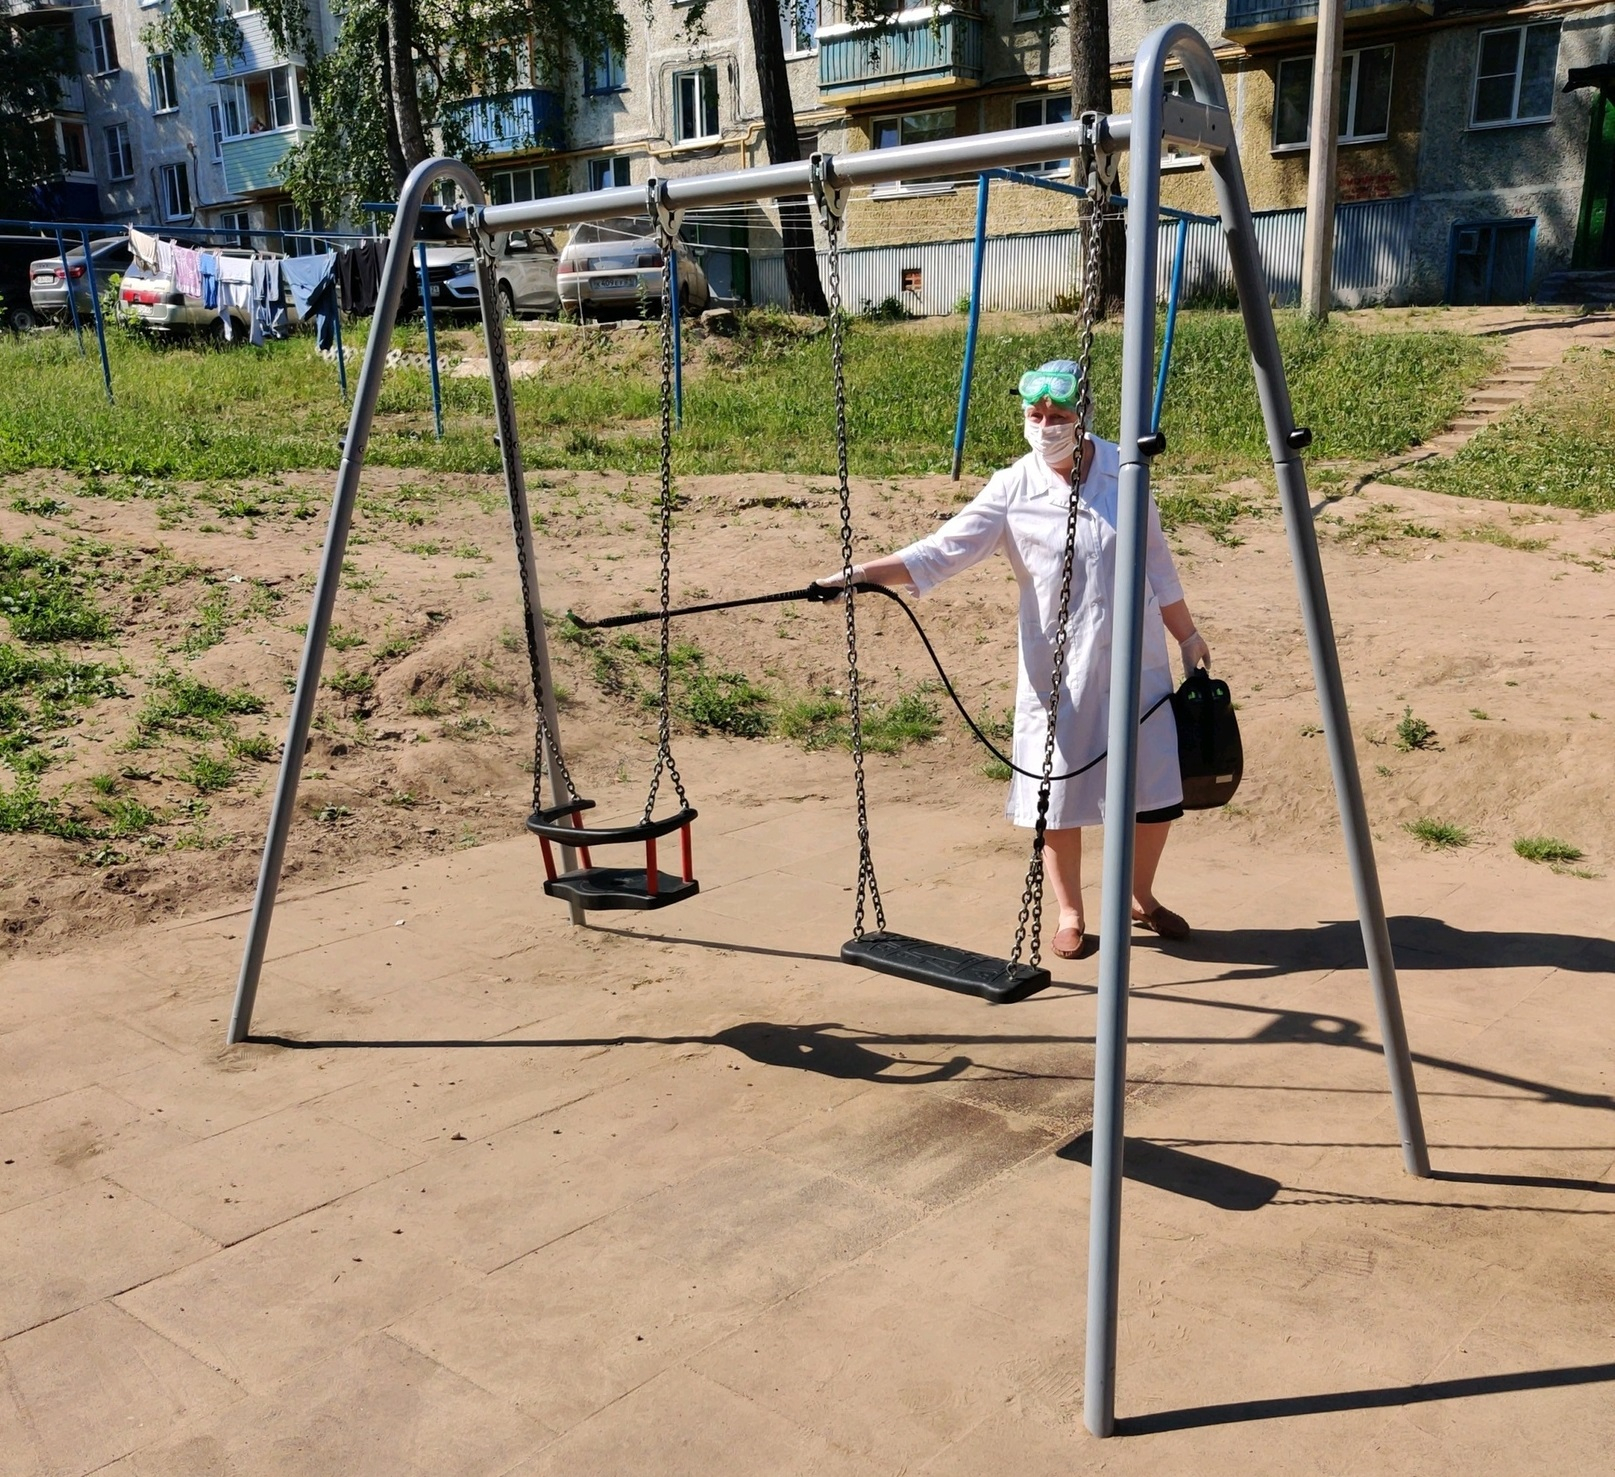 Детские игровые площадки в Чебоксарах начнут дезинфицировать вне зависимости от эпидситуации